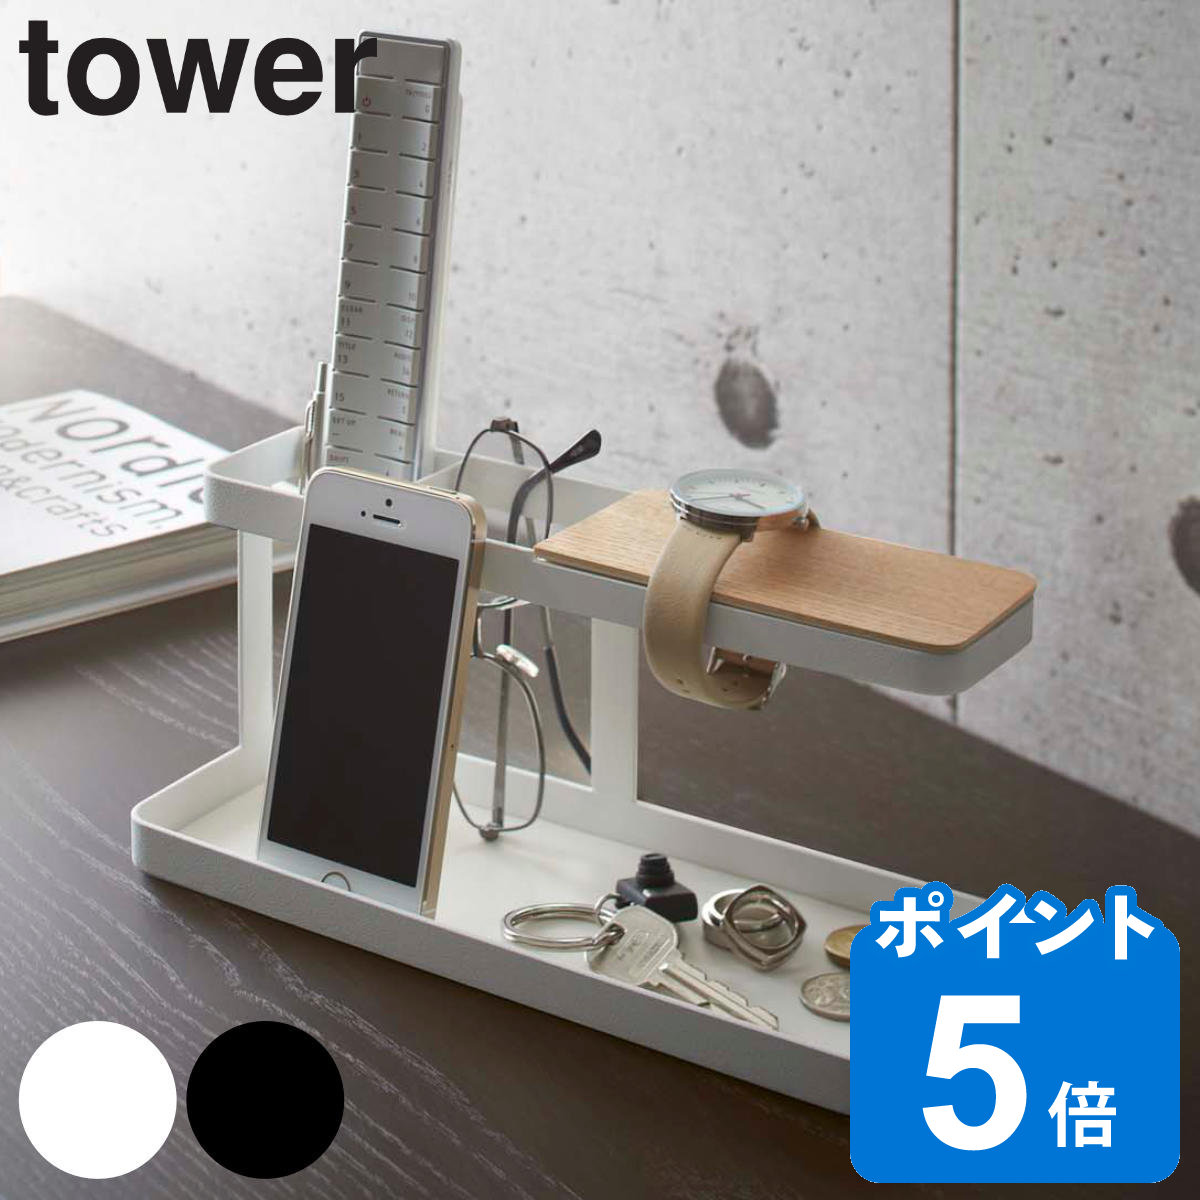 山崎実業 tower デスクバー タワー タワーシリーズ スマホスタンド 小物収納 スチール製 スマホ立て リモコンスタンド 小物入れ 収納ラック めがね 鍵 アクセサリー スタンド 